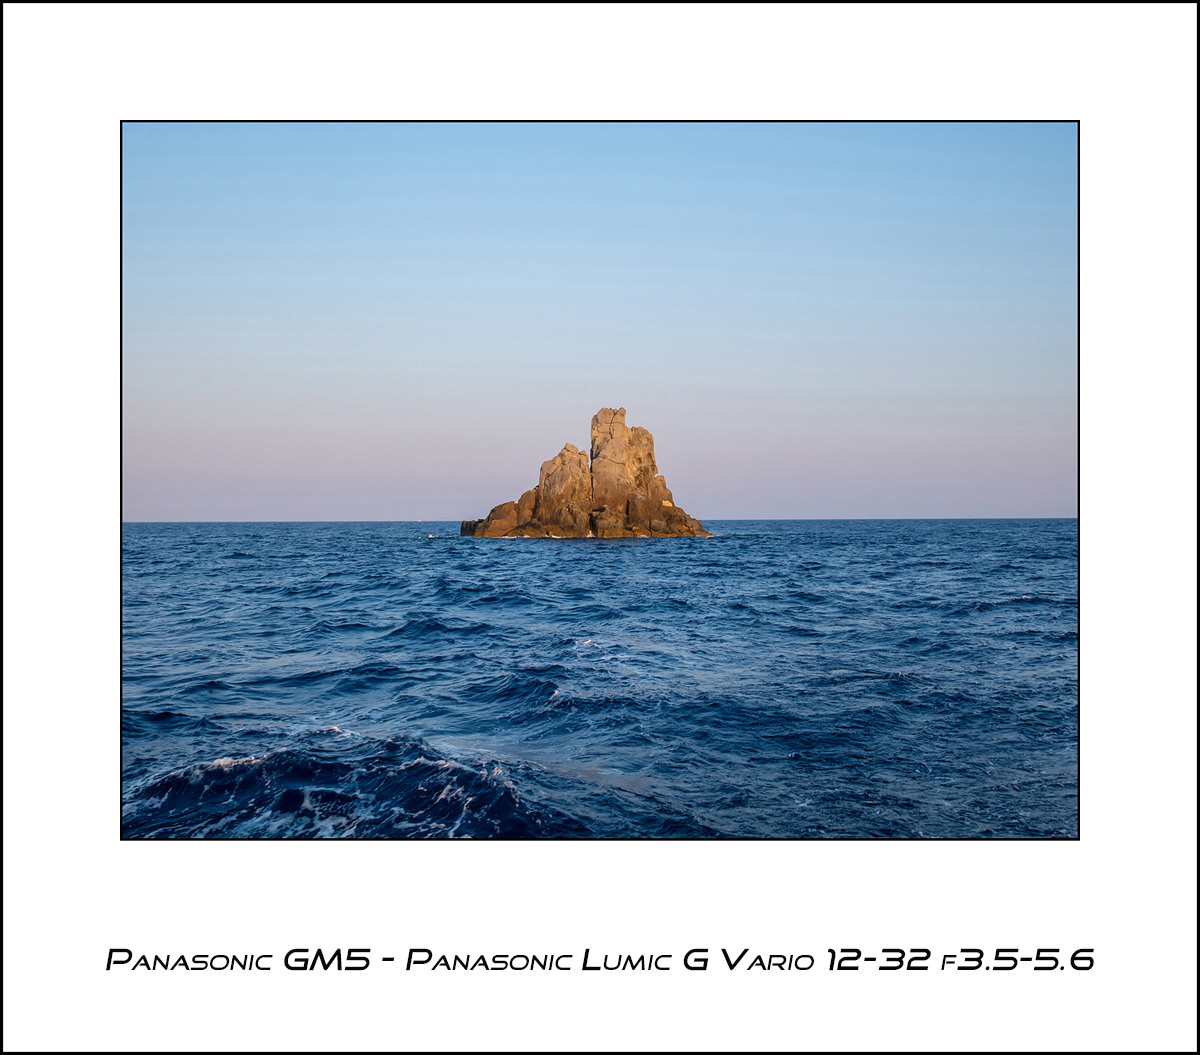 Panasonic GM5 - Panasonic G Vario 12-32 f3.5-5.6